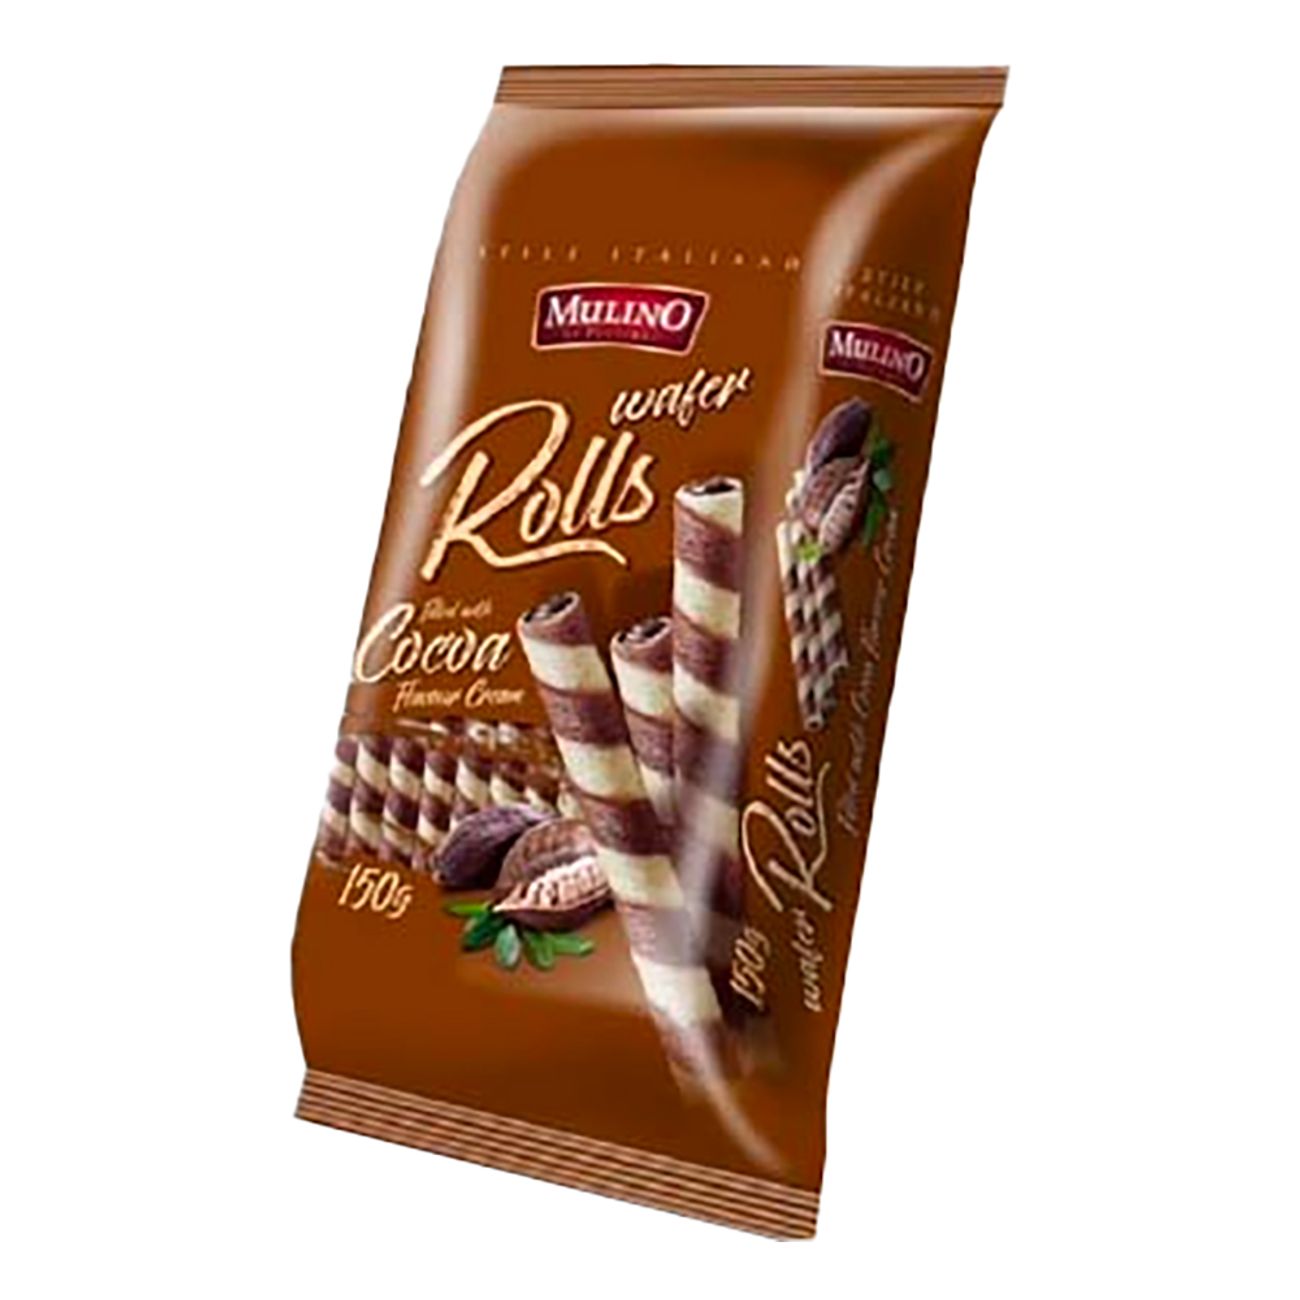 mulino-wafer-rolls-cocoa-cream-82564-1